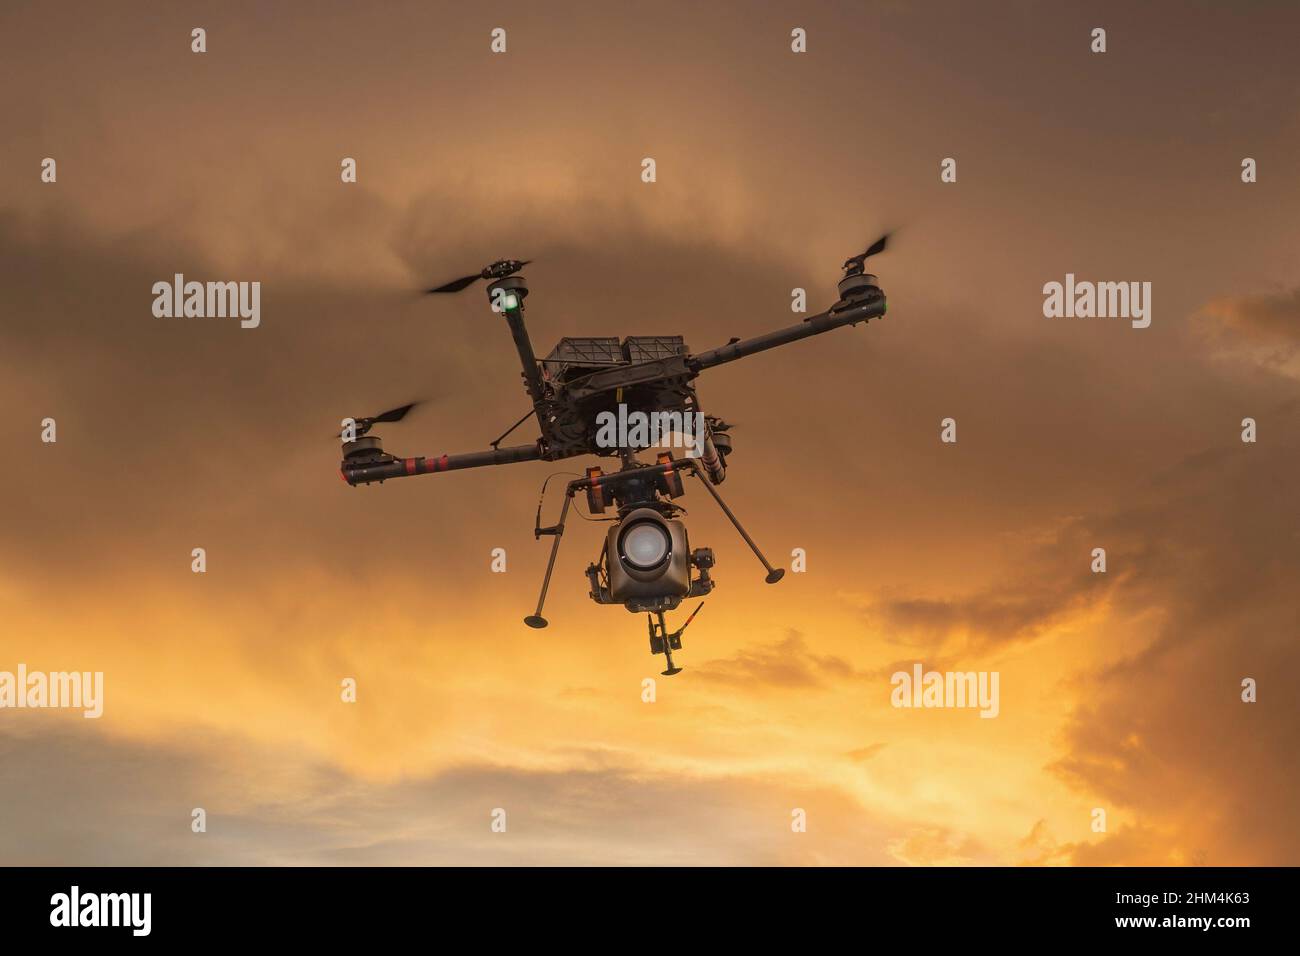 Professionelle Video- und Kamera-Drohne, die in einem goldenen Sonnenuntergangshimmel fliegt. Stockfoto